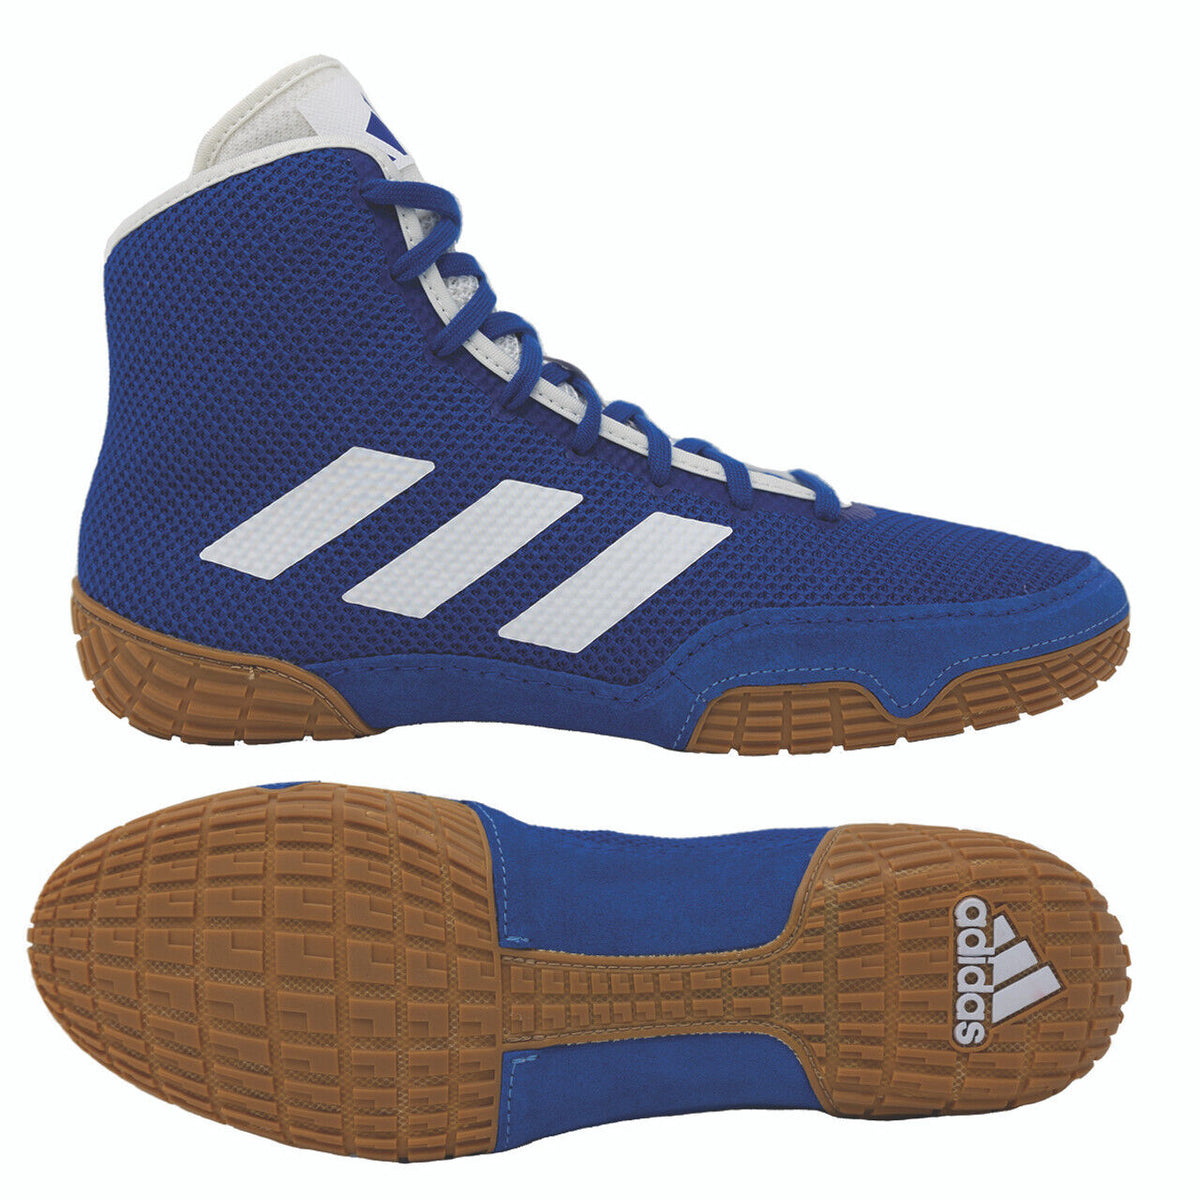 Маратонки за борба Adidas Tech-Fall в син цвят. Сега на най-добра цена във Phantom Athletics . Обувките за борба Adidas са сред най-търсените обувки сред борците по целия свят, тъй като предлагат превъзходно качество, съчетано с максимален комфорт. Здравата подметка осигурява сцепление върху тепиха за борба. 